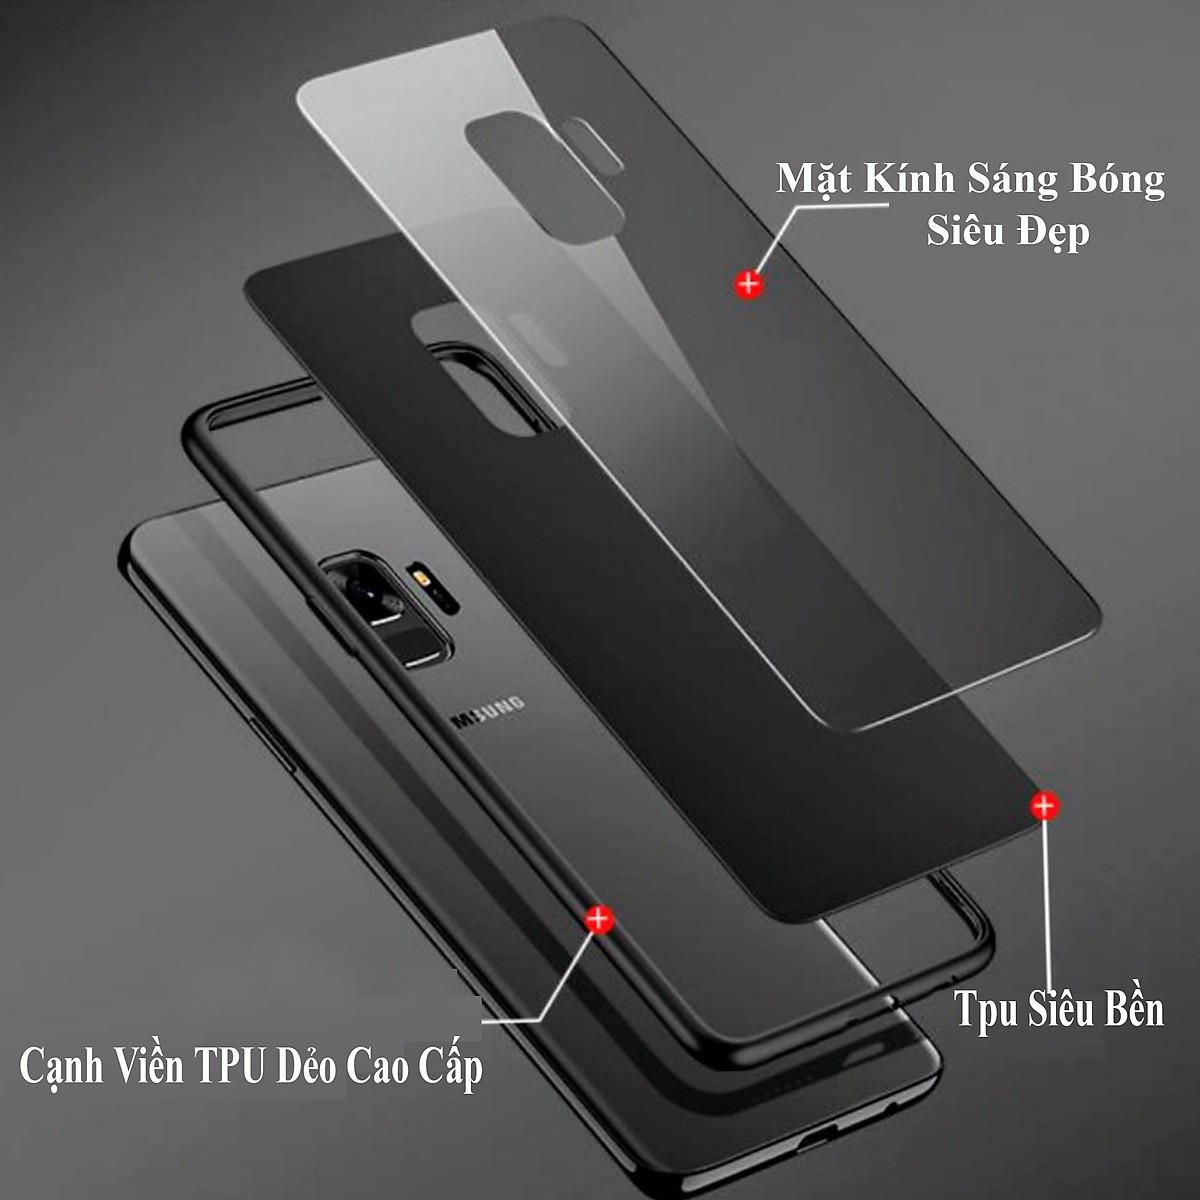 Hình ảnh 	 Ốp lưng kính cường lực hình thư pháp phong thủy trừu tượng dành cho điện thoại Oppo F11 Pro/ F11/ F9/ F1S/ a9 2020/ A7/ A5S/ A3S/ Realme C1/ Realme 2 - Hàng chính hãng